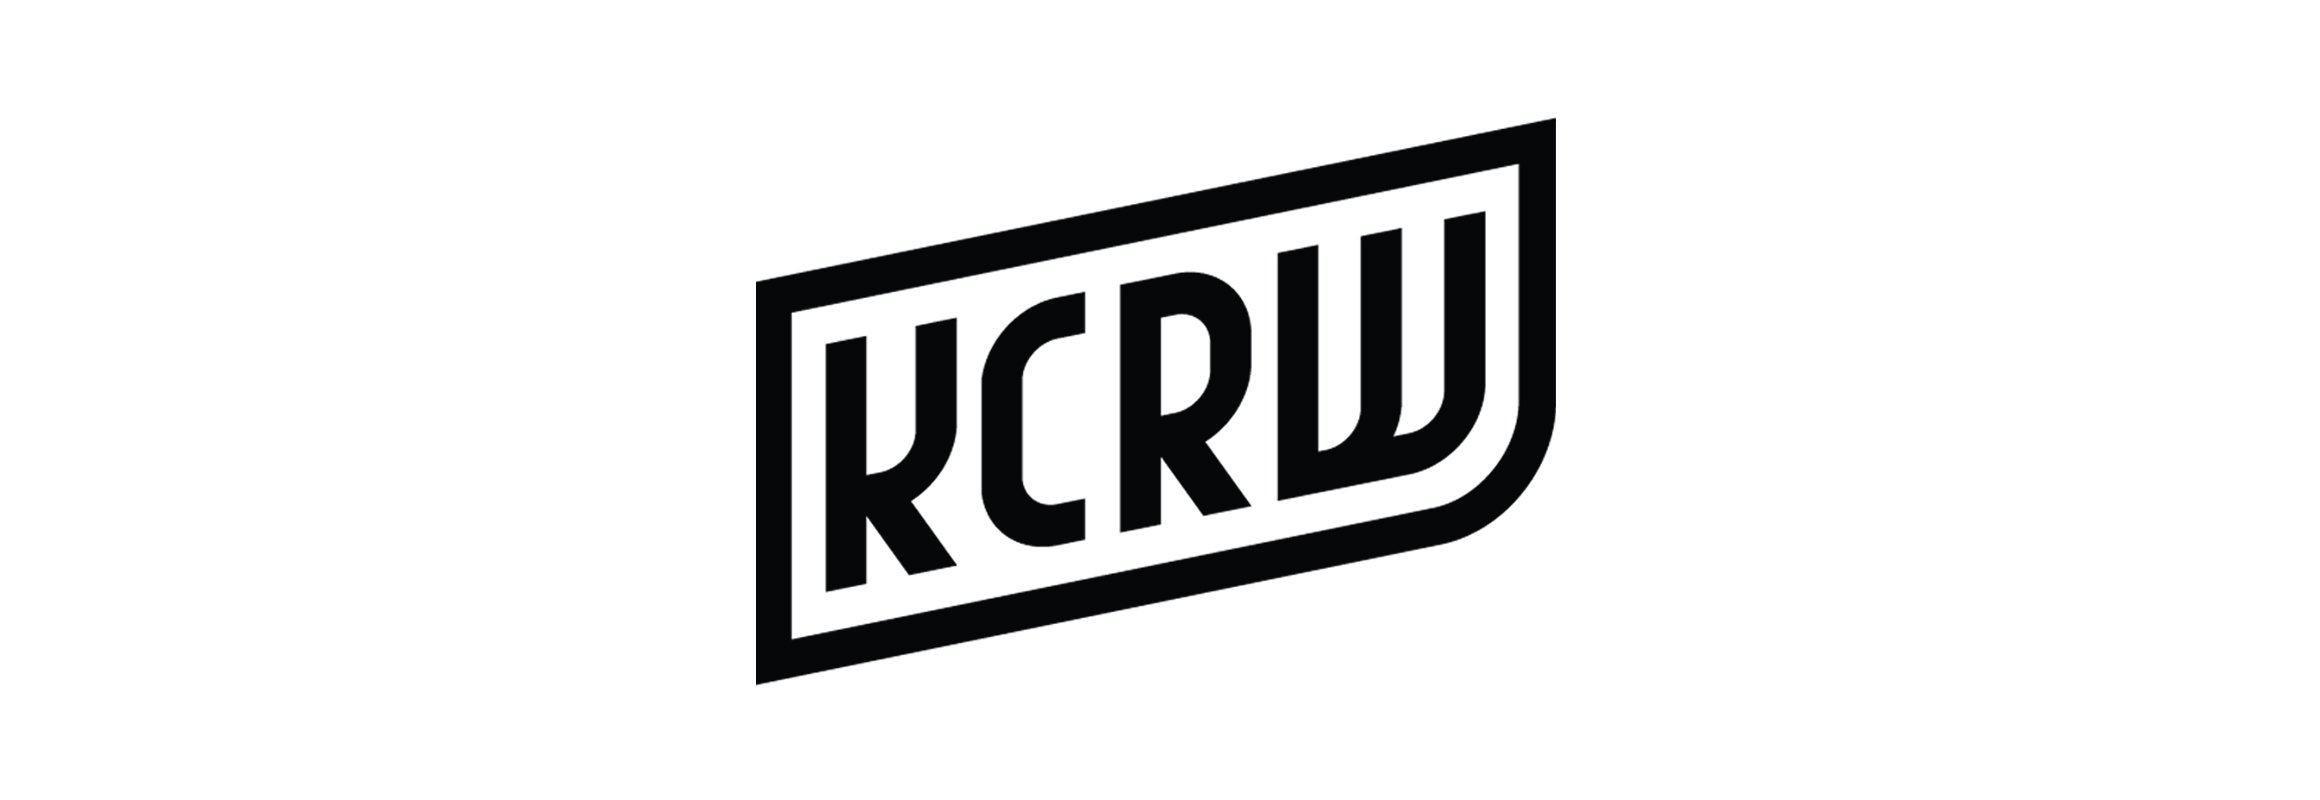 kcrw_logo_wide.jpg